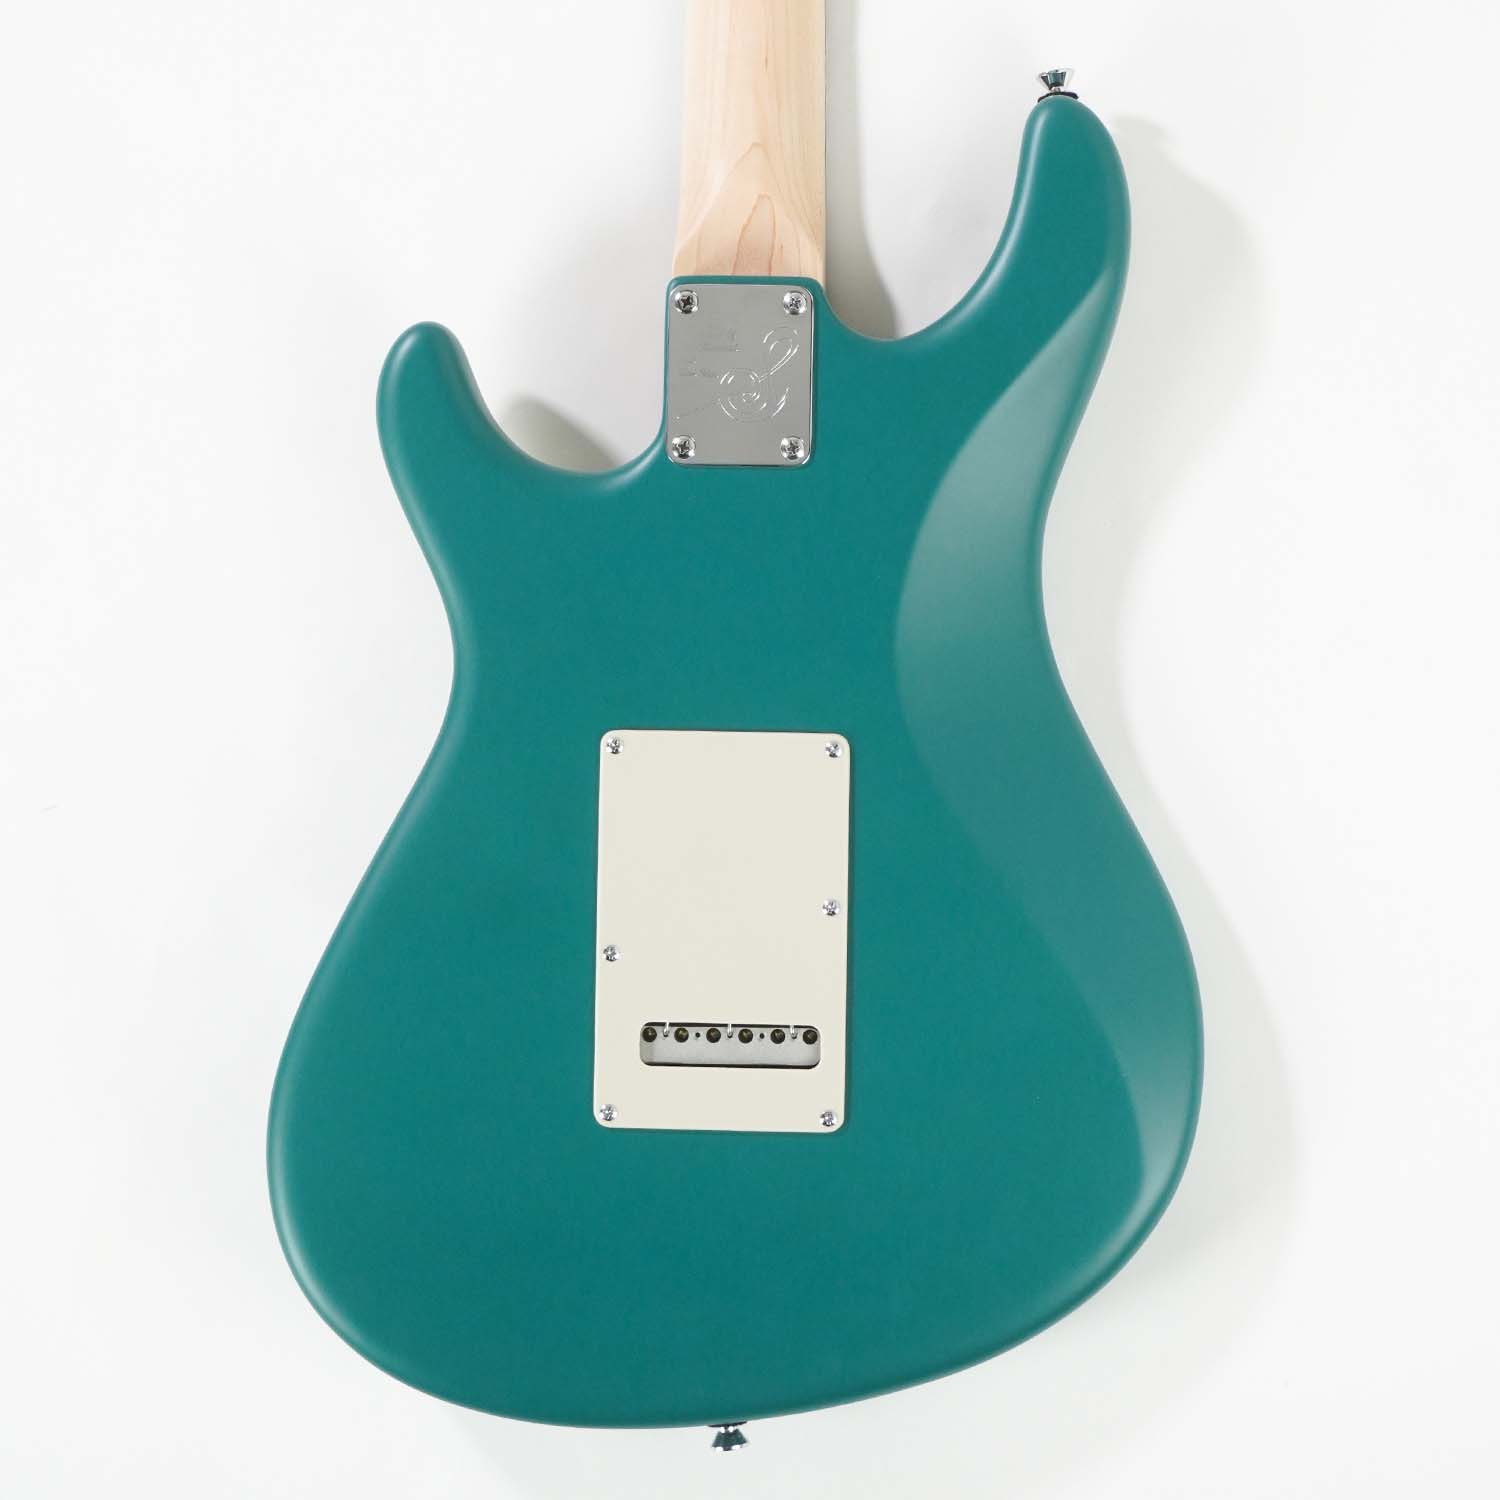 Stem-Sonia | Sago New Material Guitars